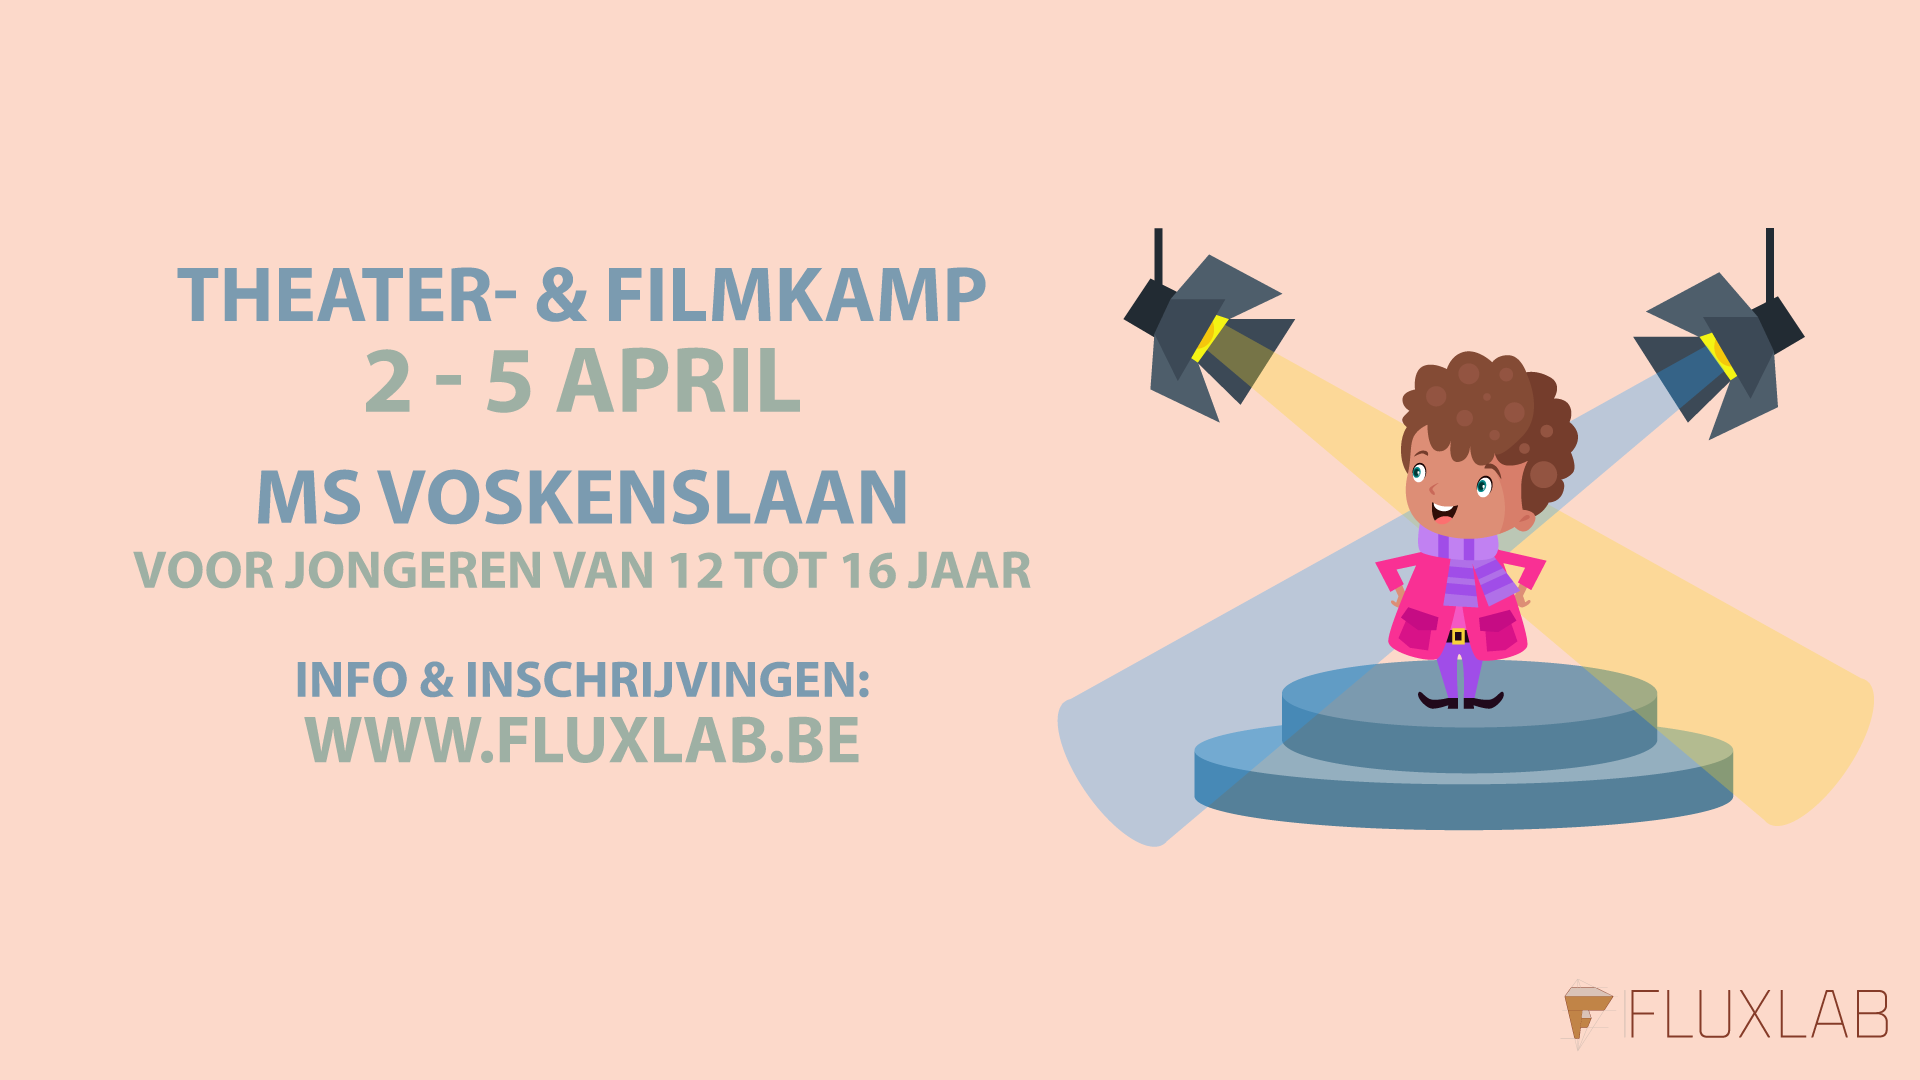 Theater-&-filmkamp-Pasen-Voskenslaan